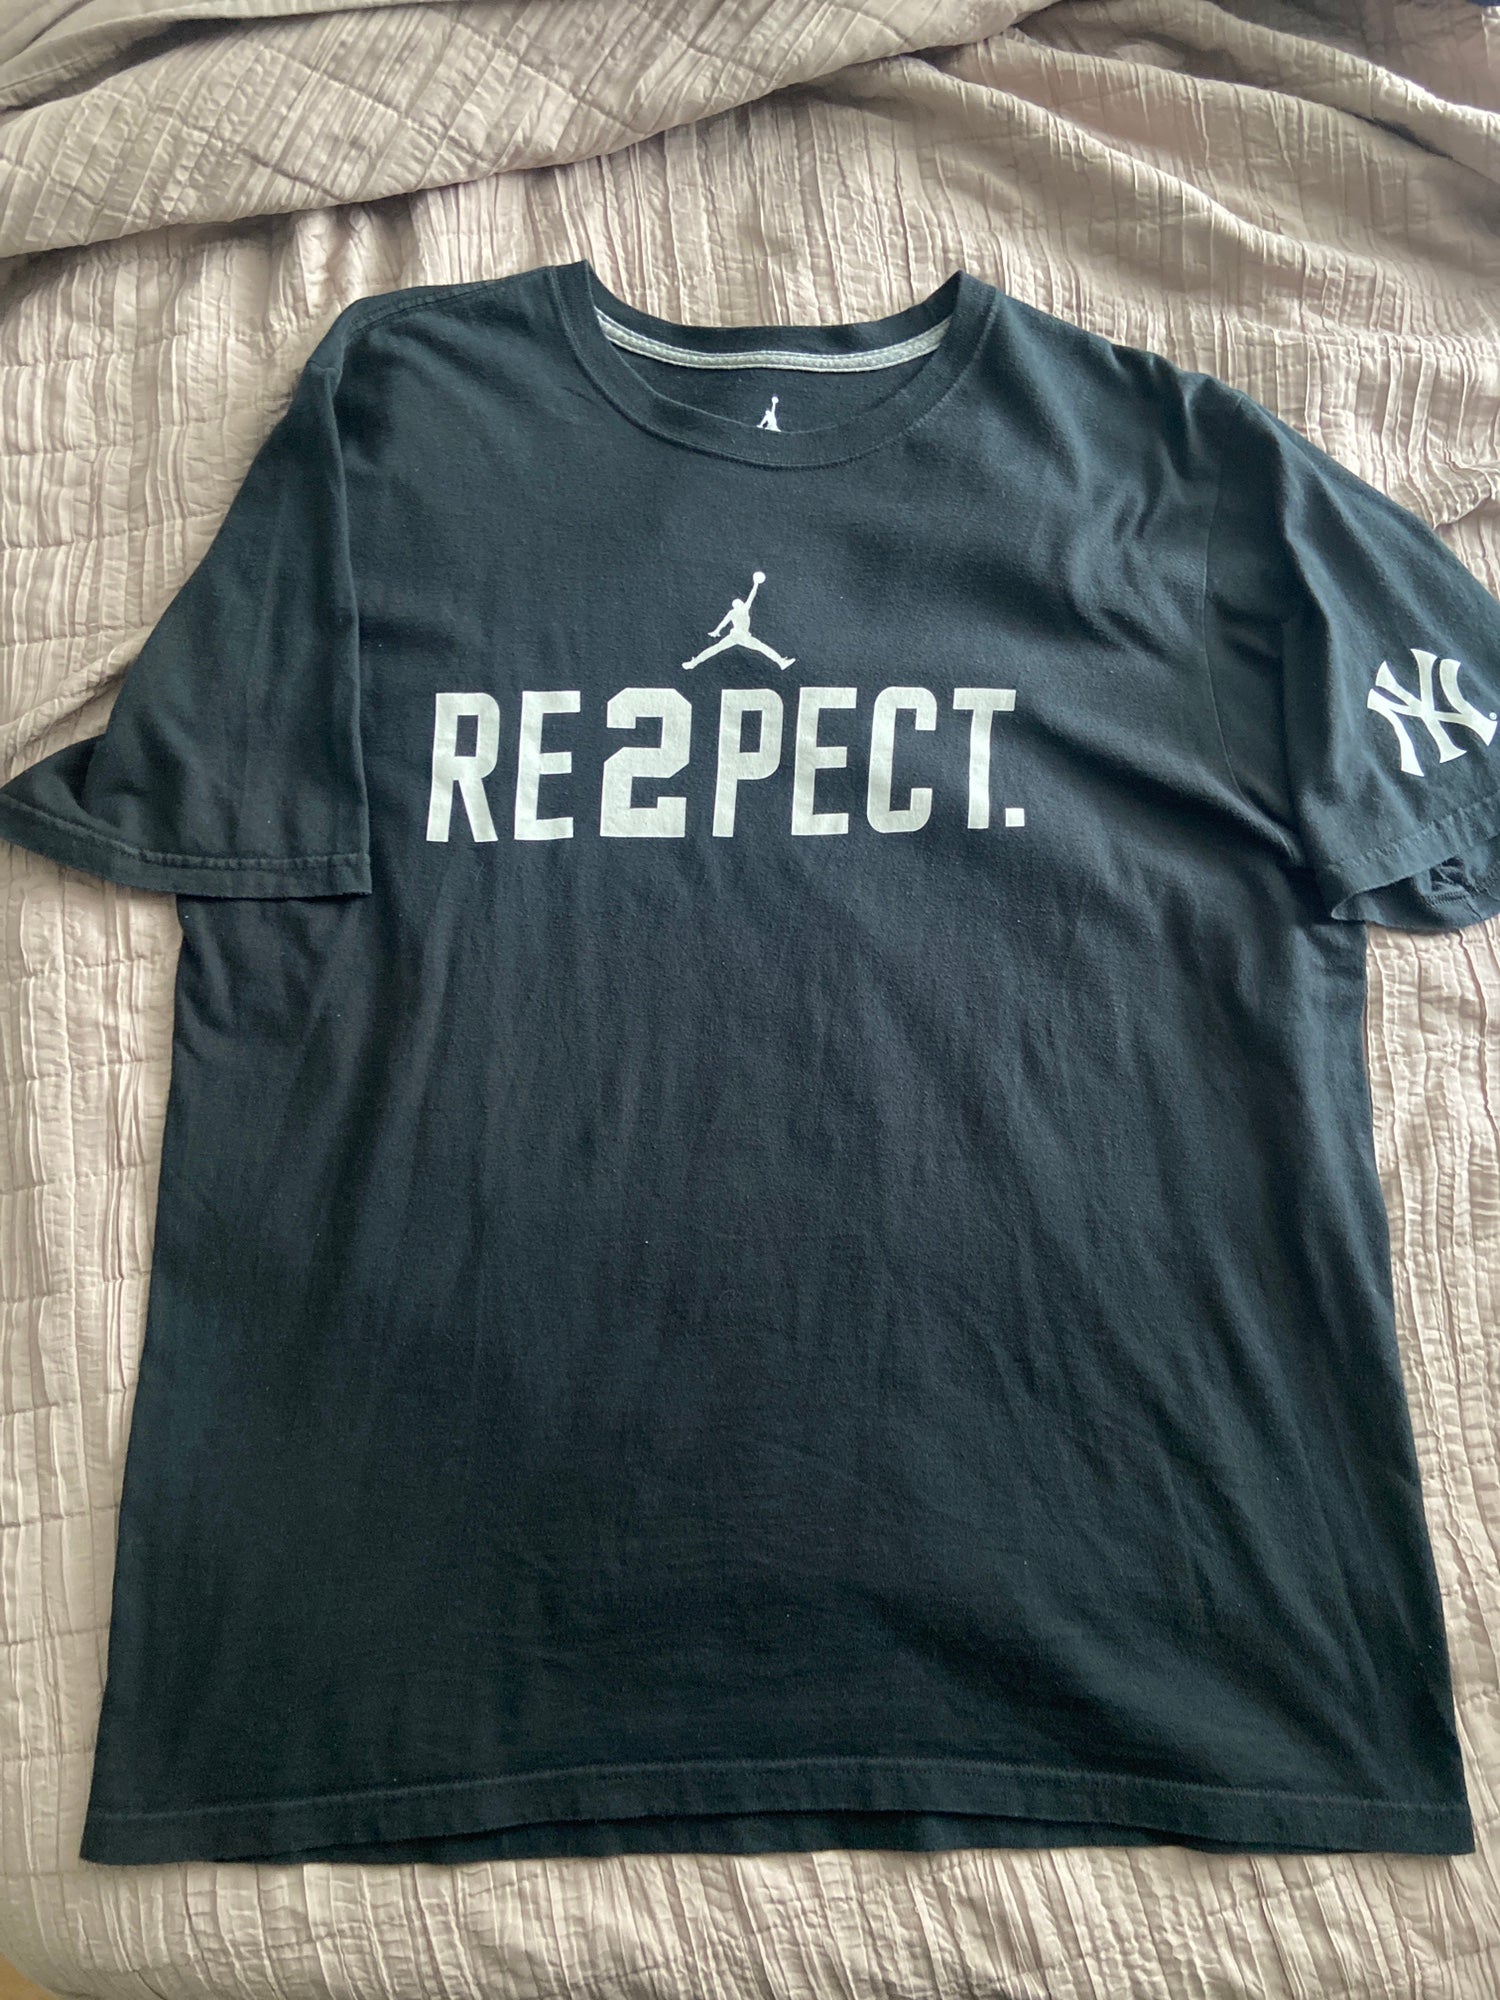 Respect Derek Jeter V-Neck T-Shirt - Customon